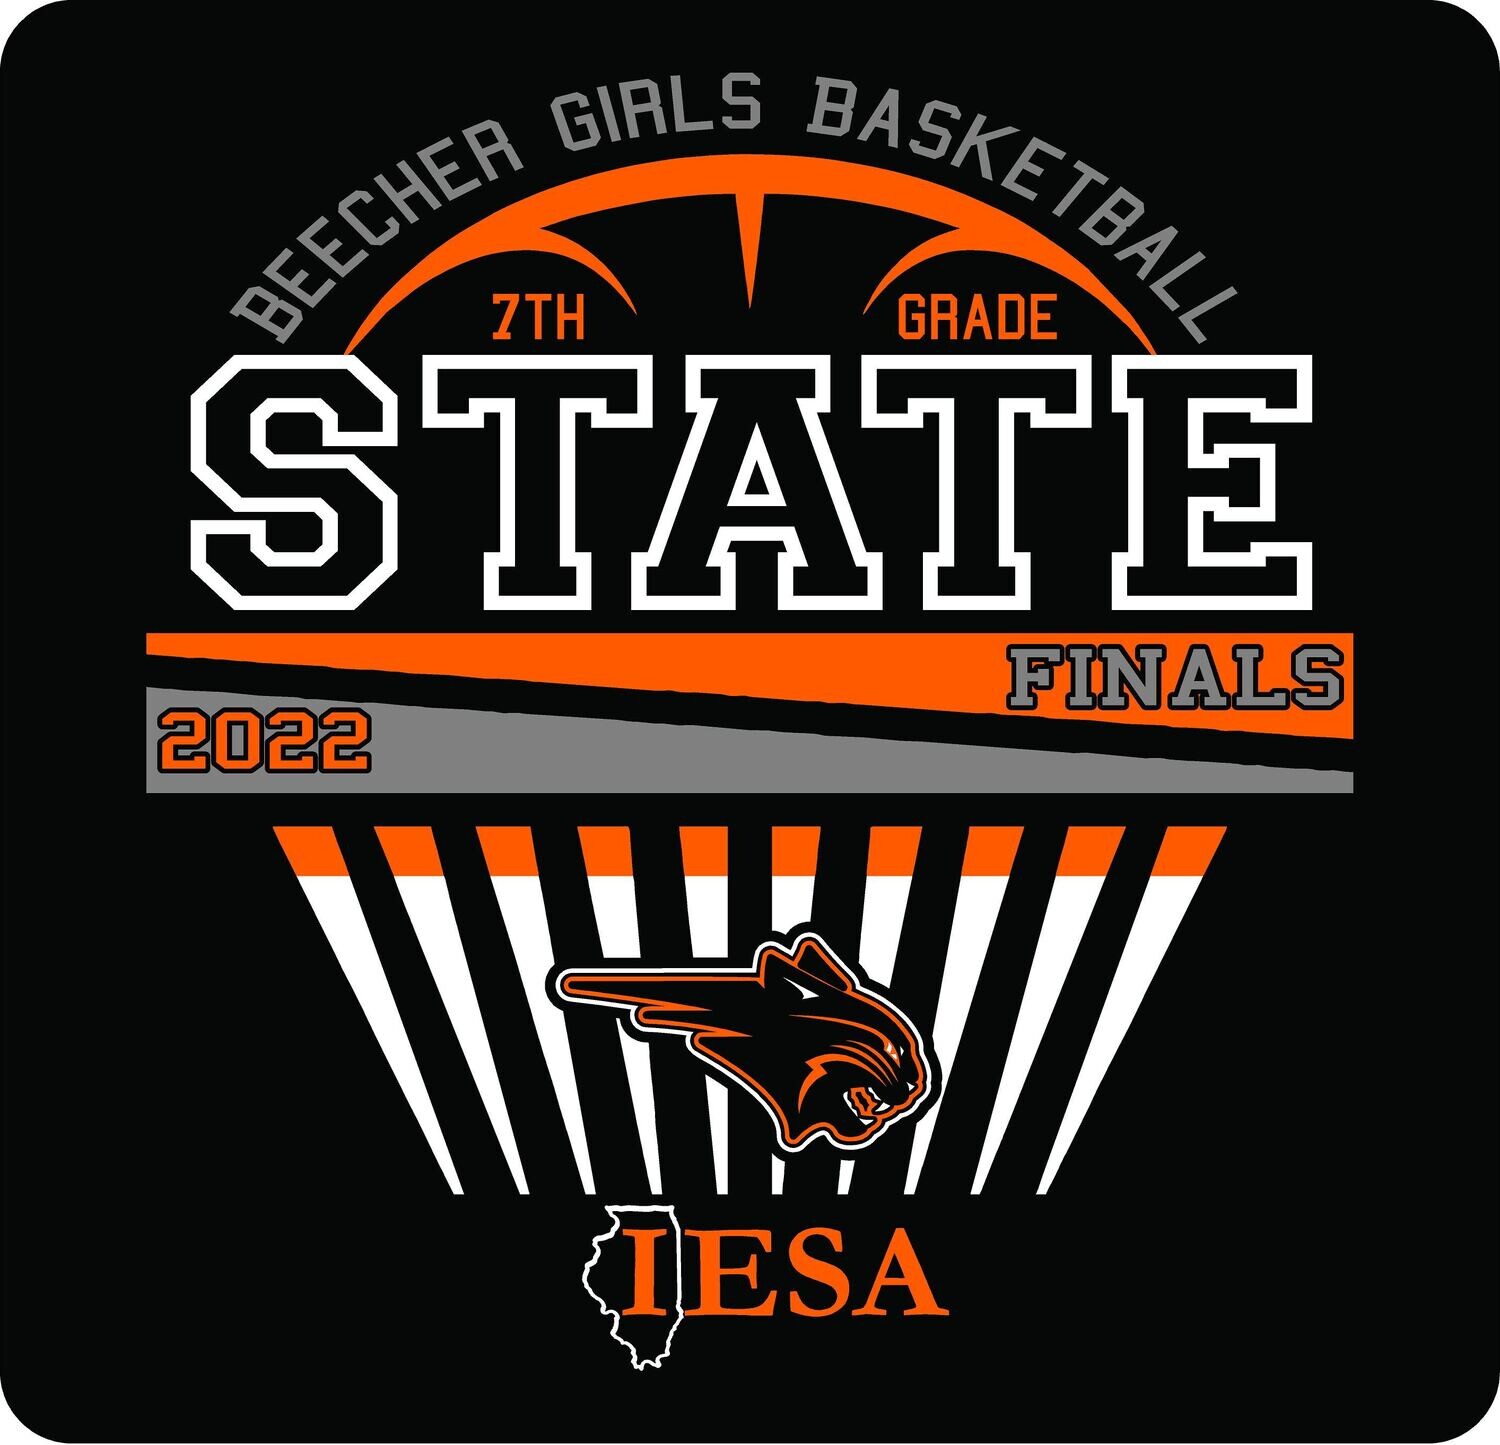 Beecher Girls Basketball State Finals 2022